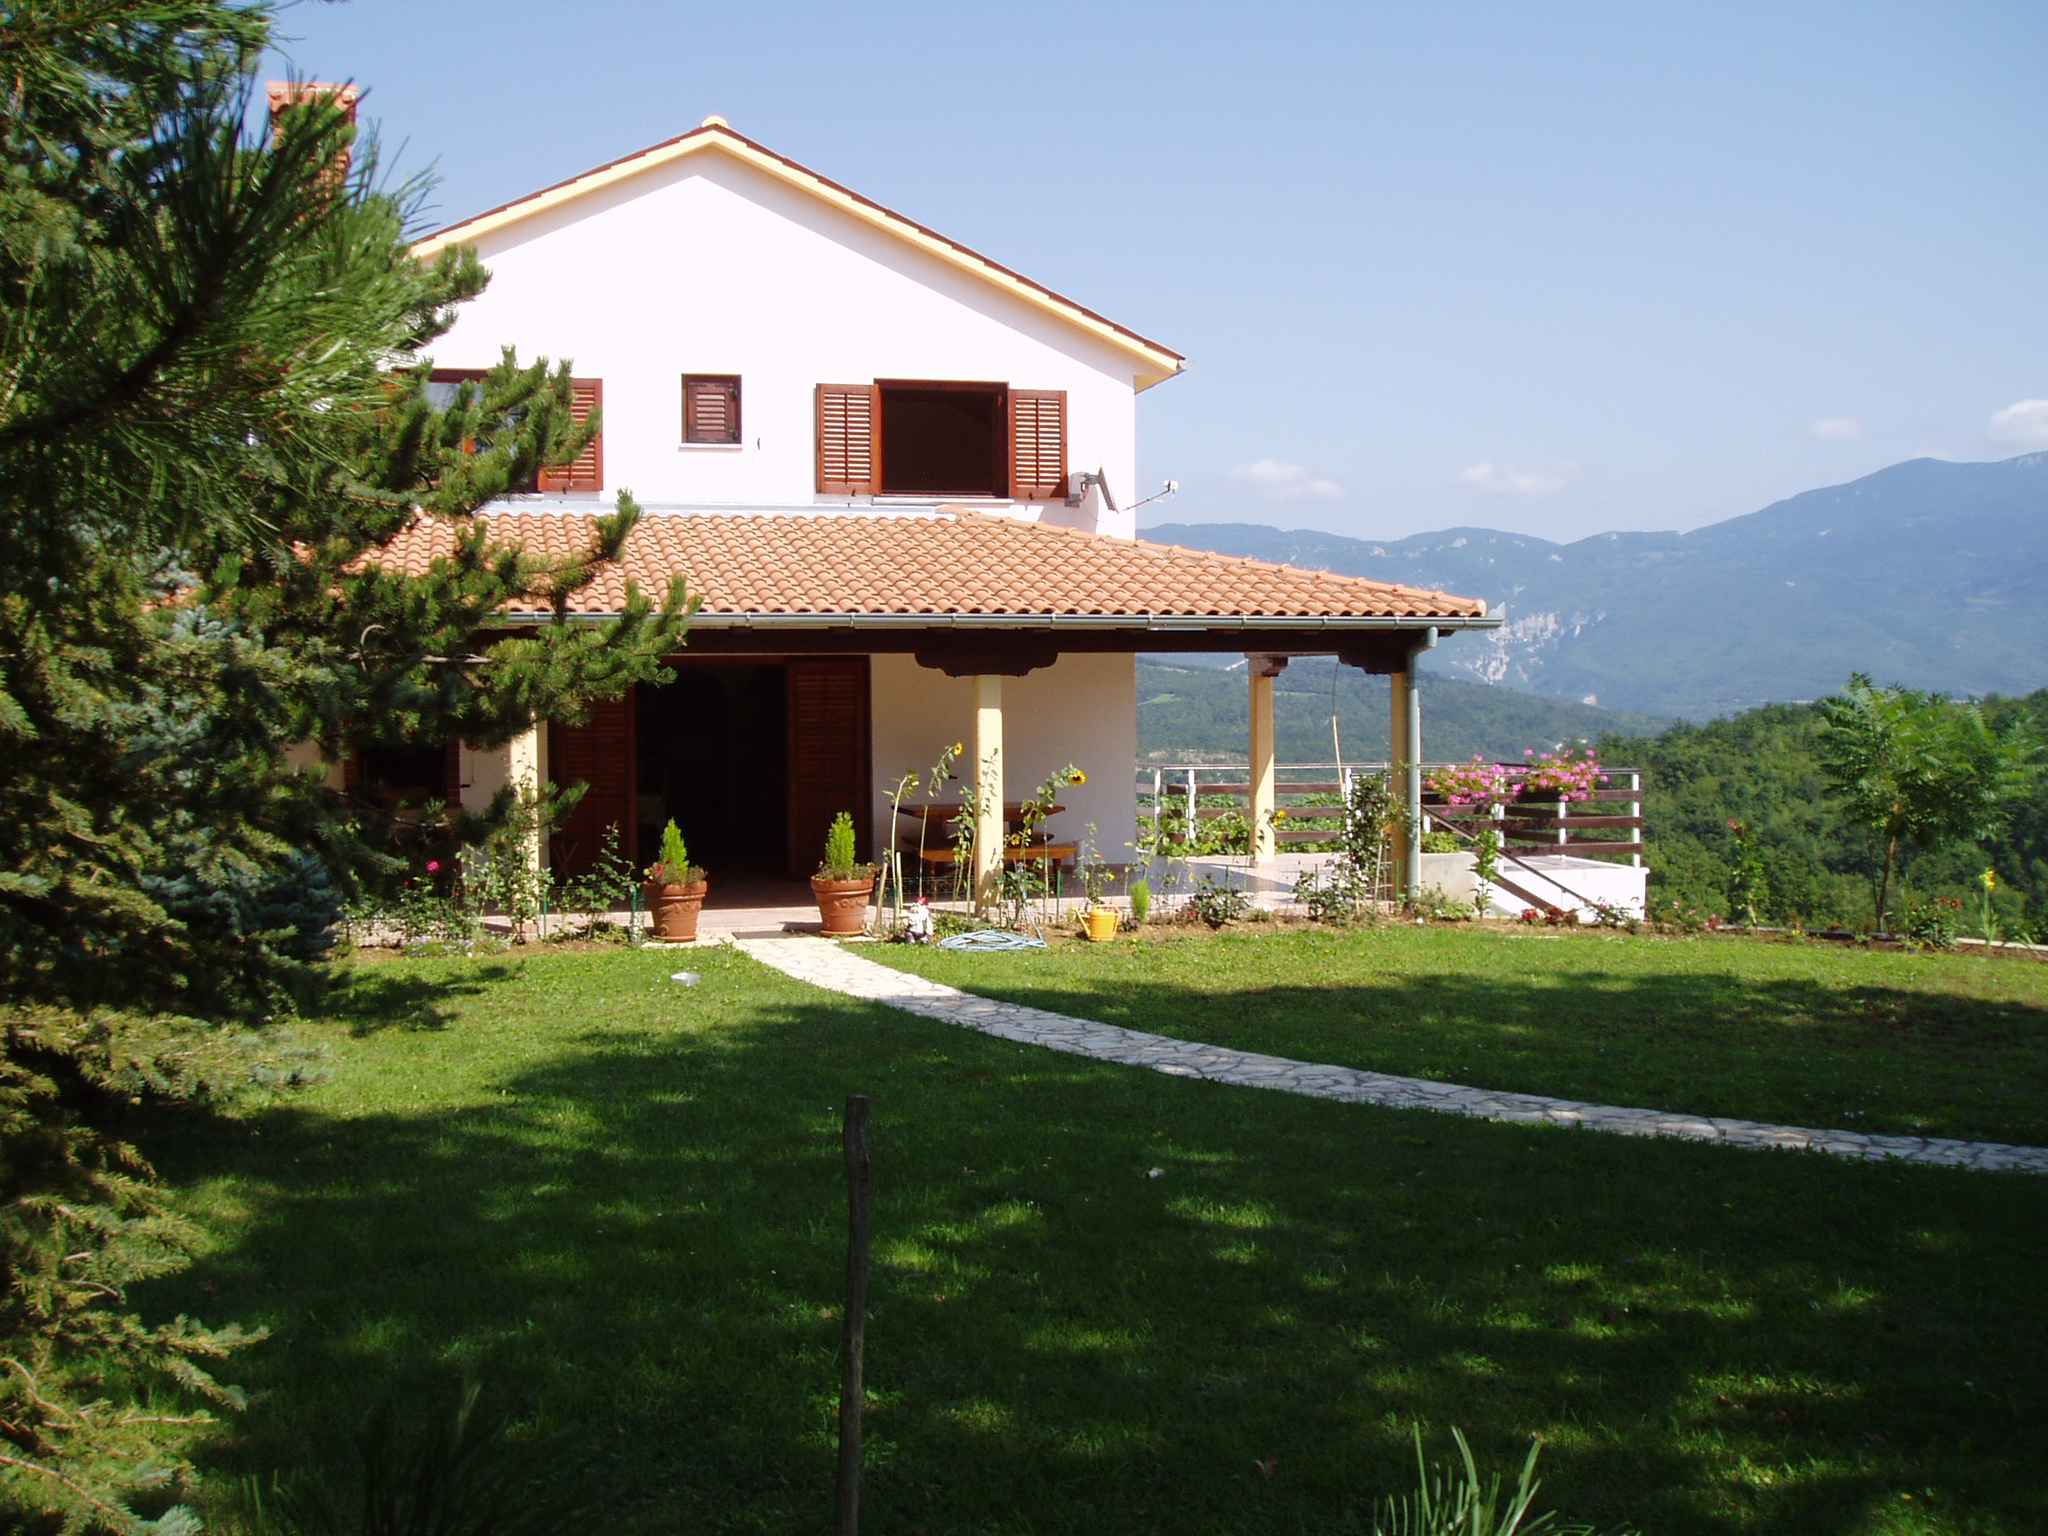 Ferienhaus in der Natur mit Weinberg und Olivenhai Bauernhof in Kroatien